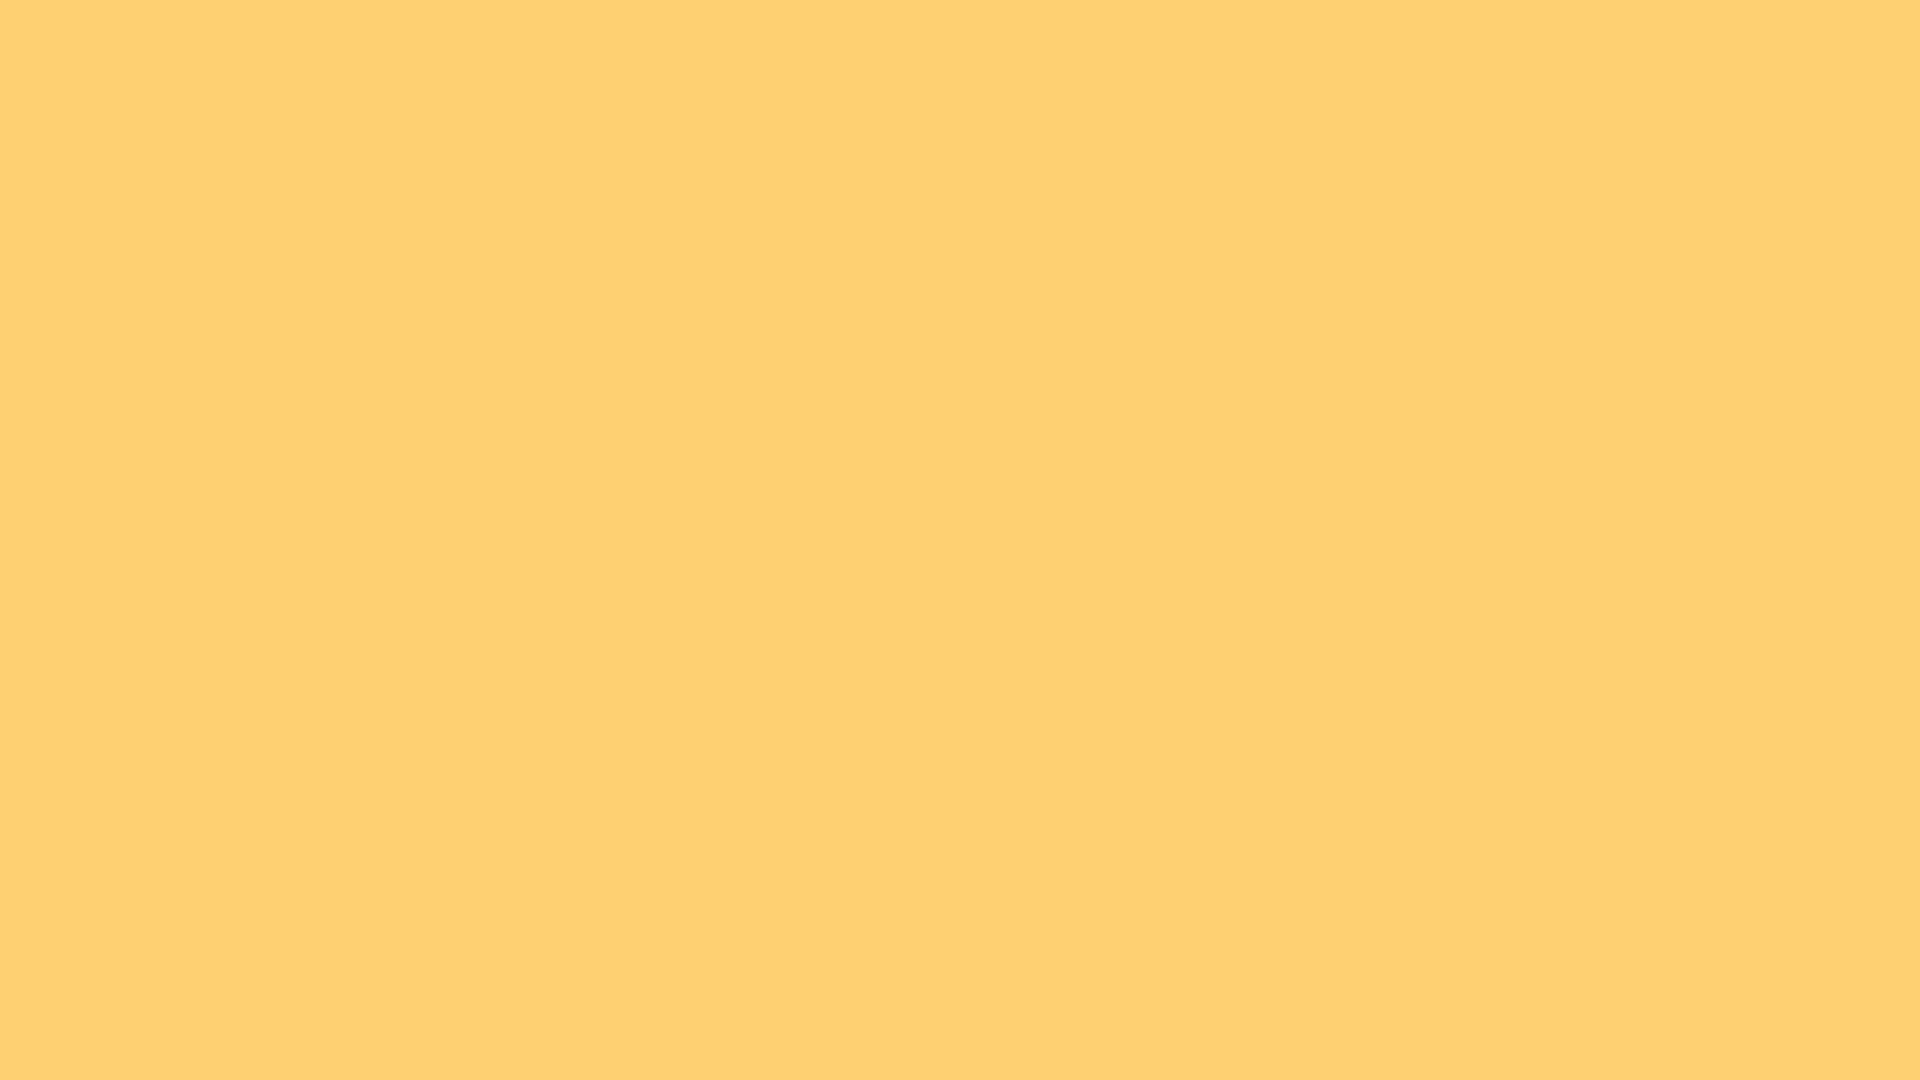 Hình nền màu vàng trơn: Màu vàng trơn trên hình nền sẽ mang đến cho bạn cảm giác ấm áp, tươi sáng tràn đầy năng lượng. Với sự đơn giản và tinh tế của màu sắc này, bức ảnh của bạn sẽ trở nên nổi bật hơn bao giờ hết.